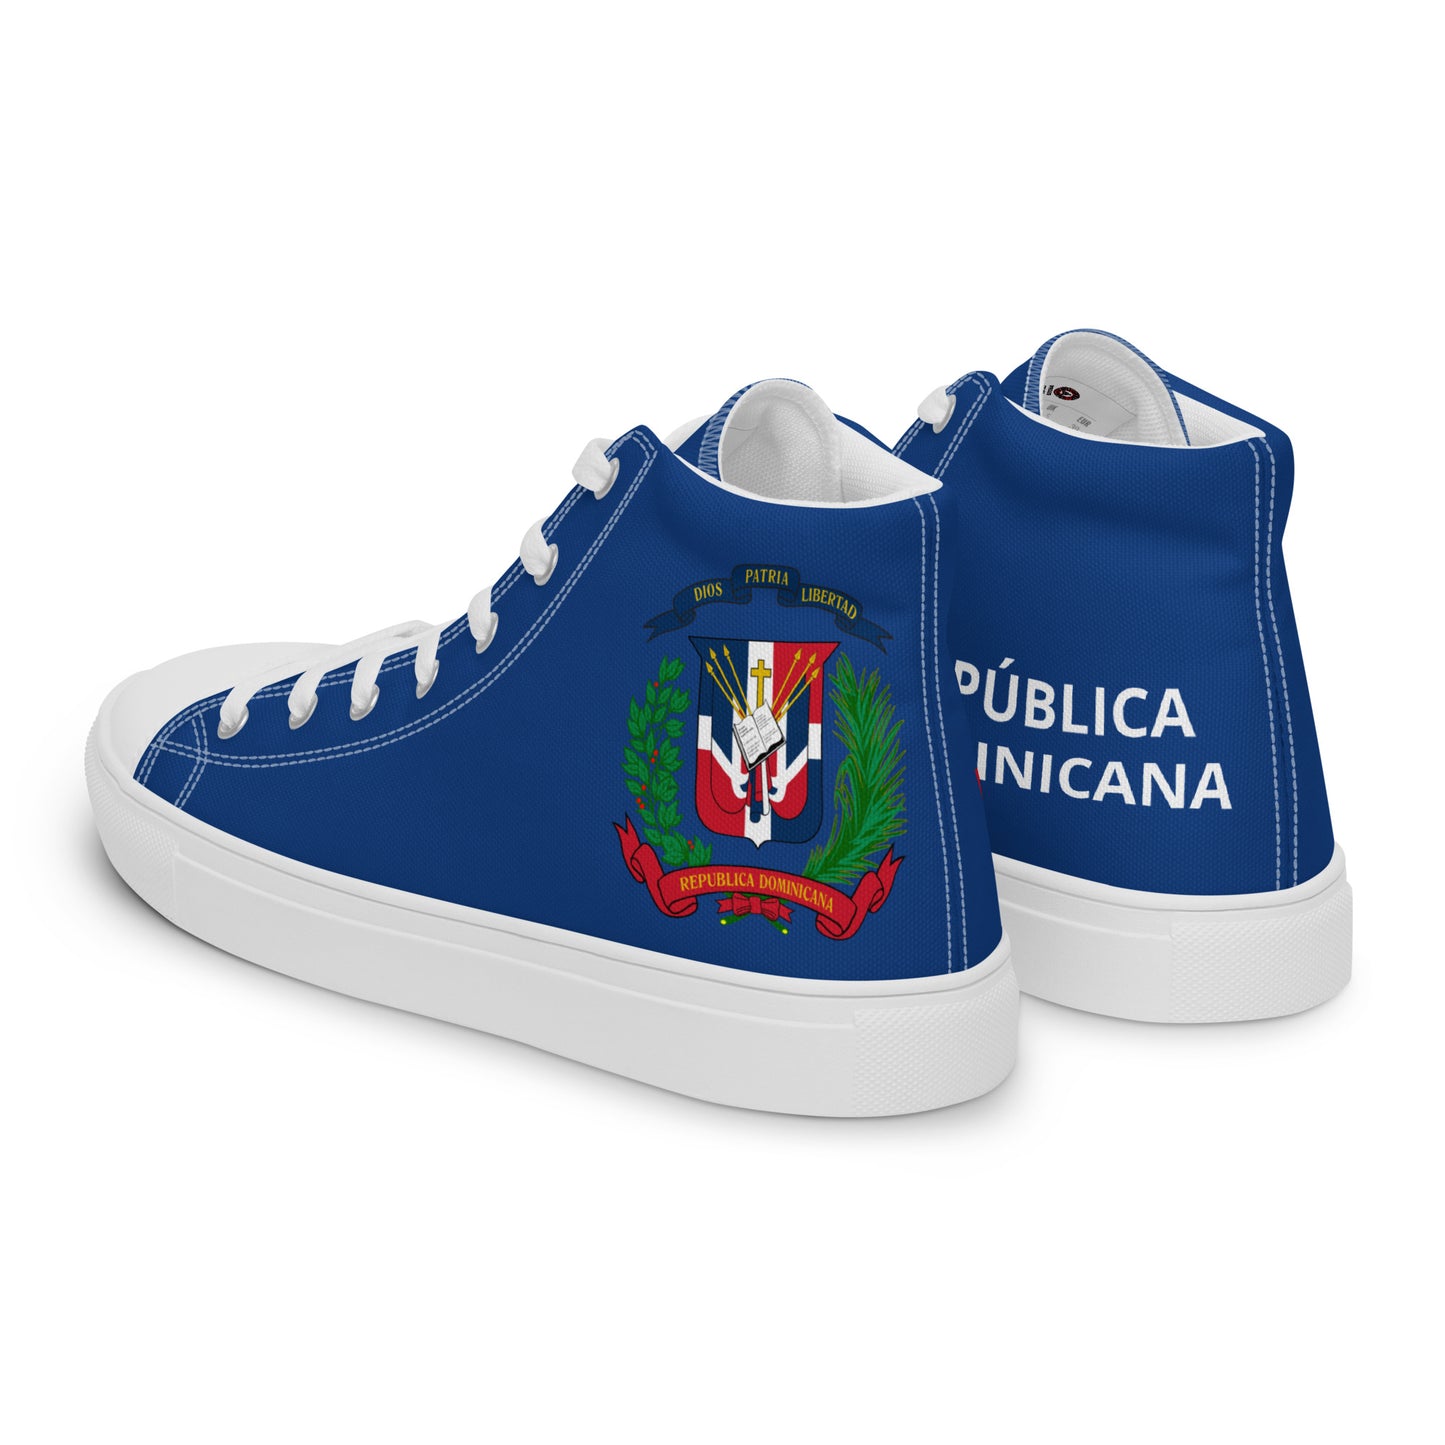 República Dominicana - Women - Blue - High top shoes